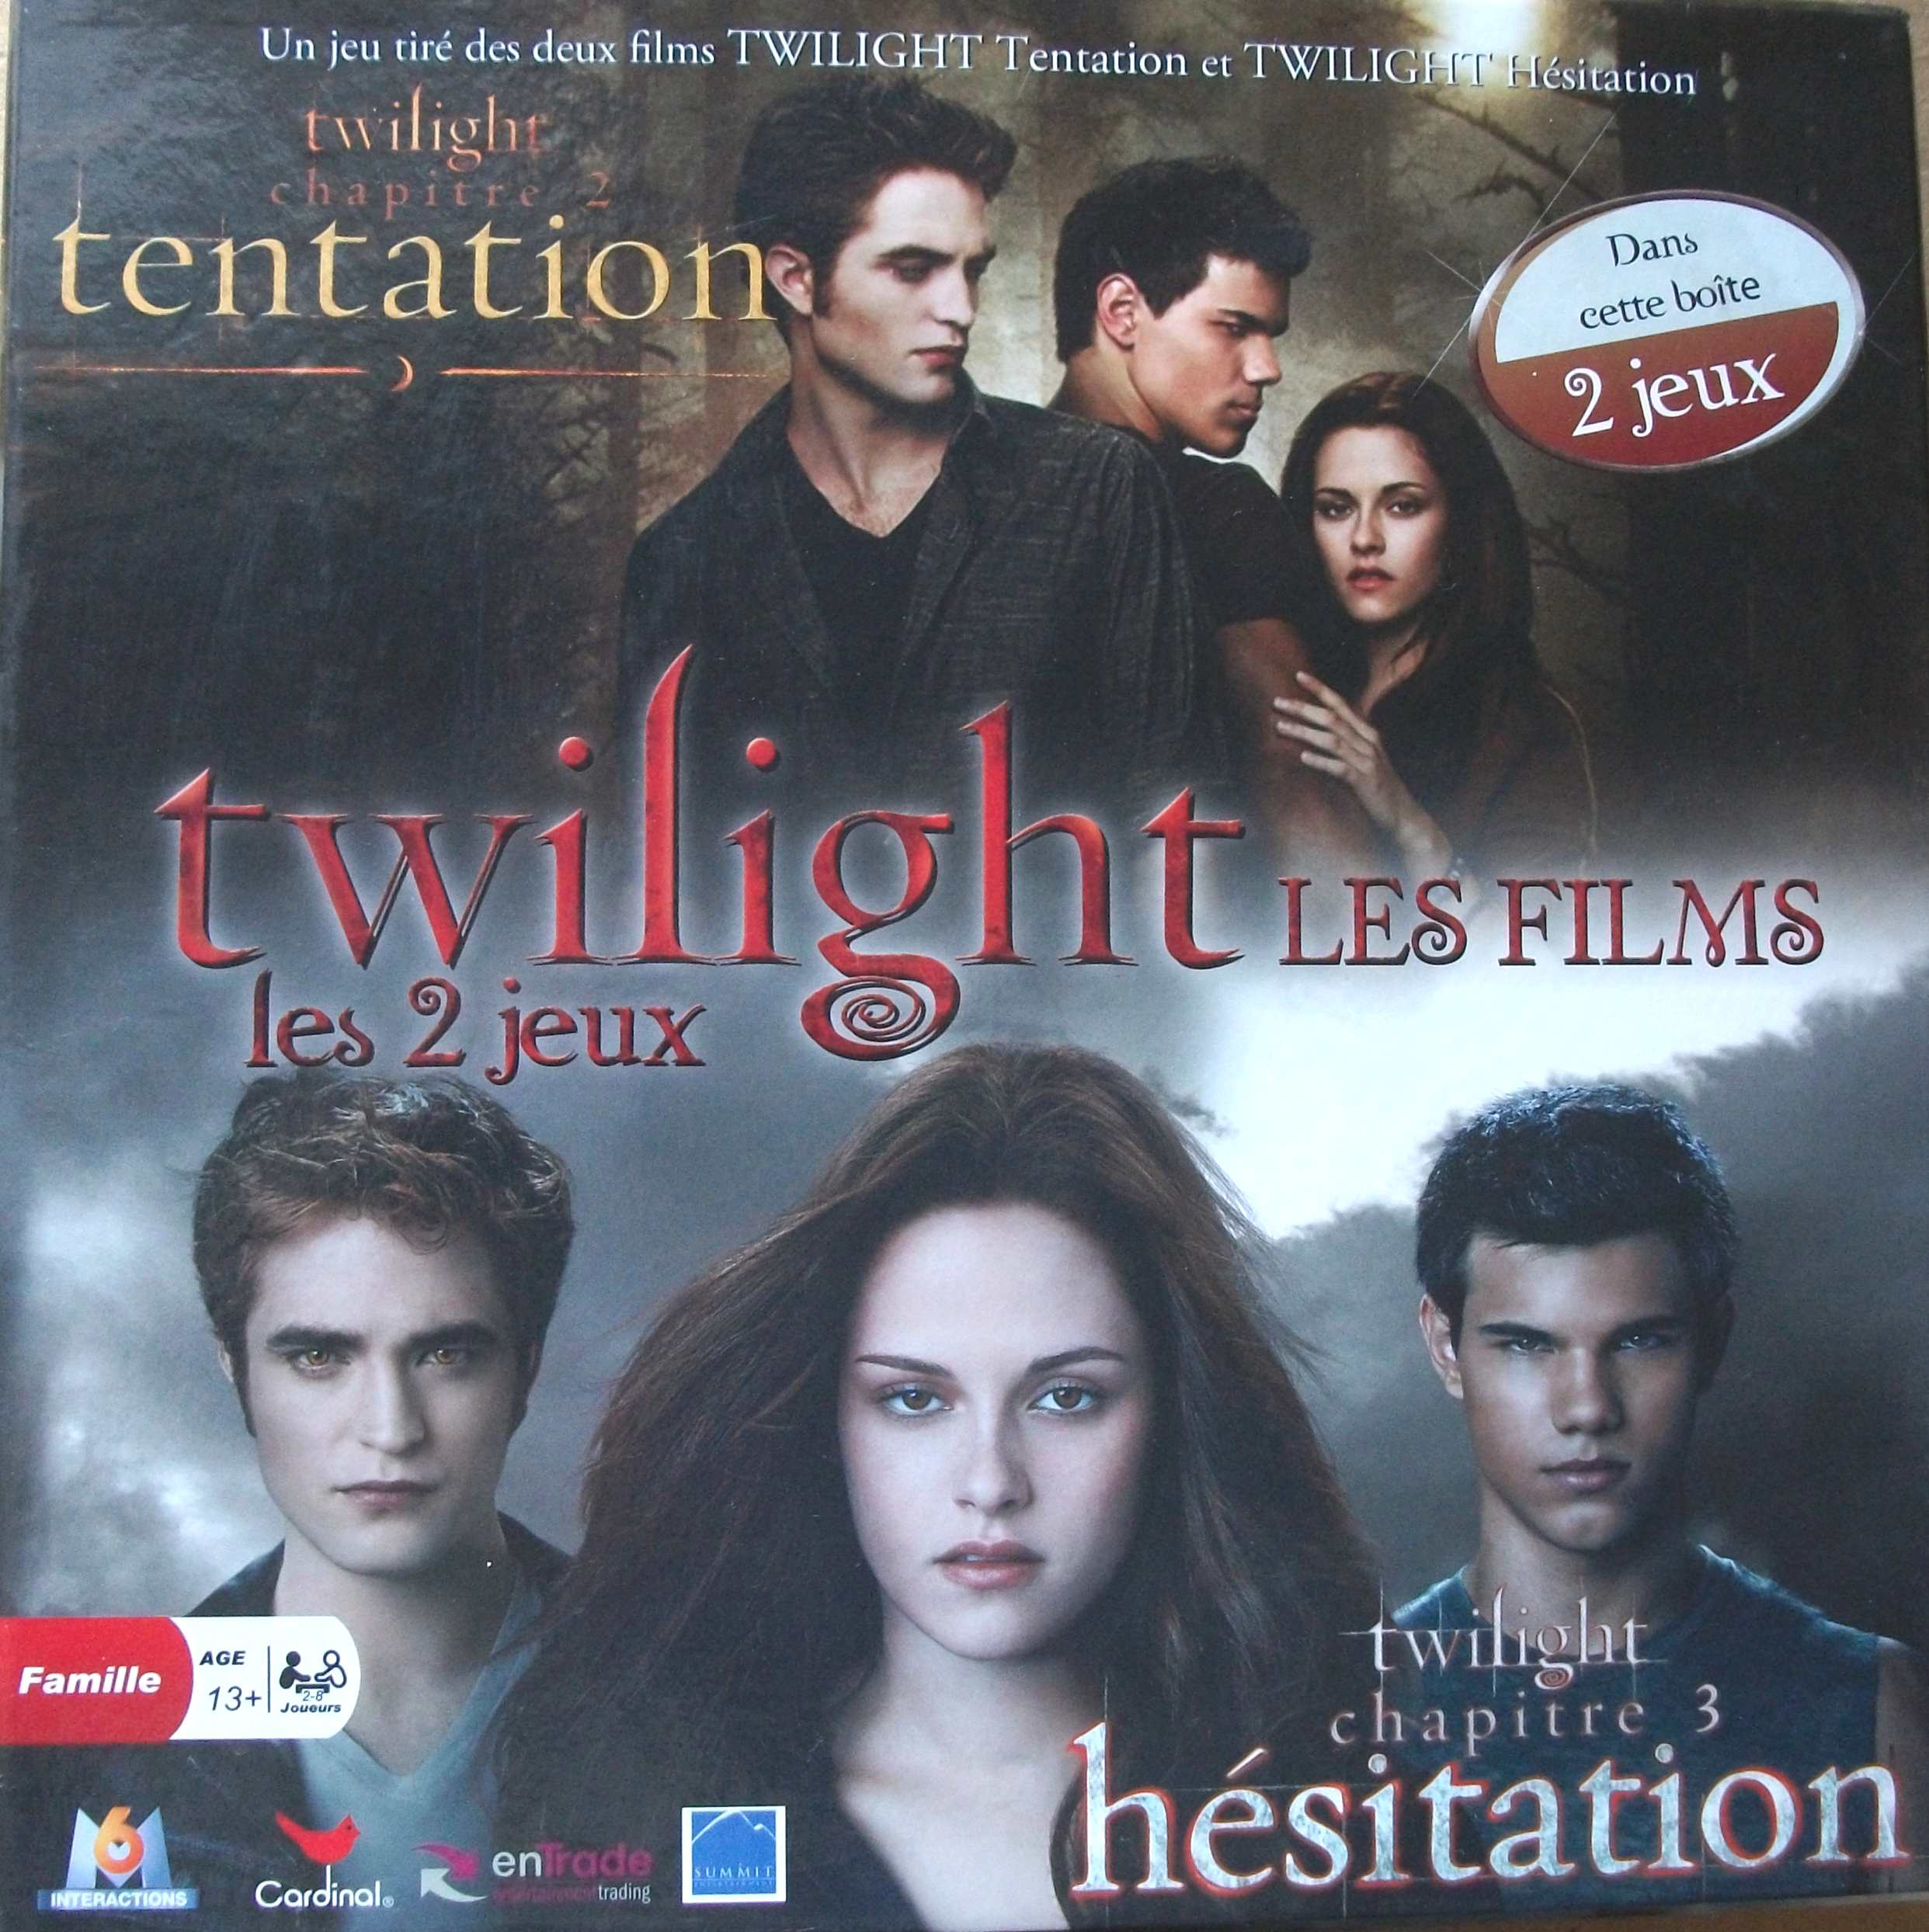 Twilight Chapitre 2 et 3 Tentation-Hésitation